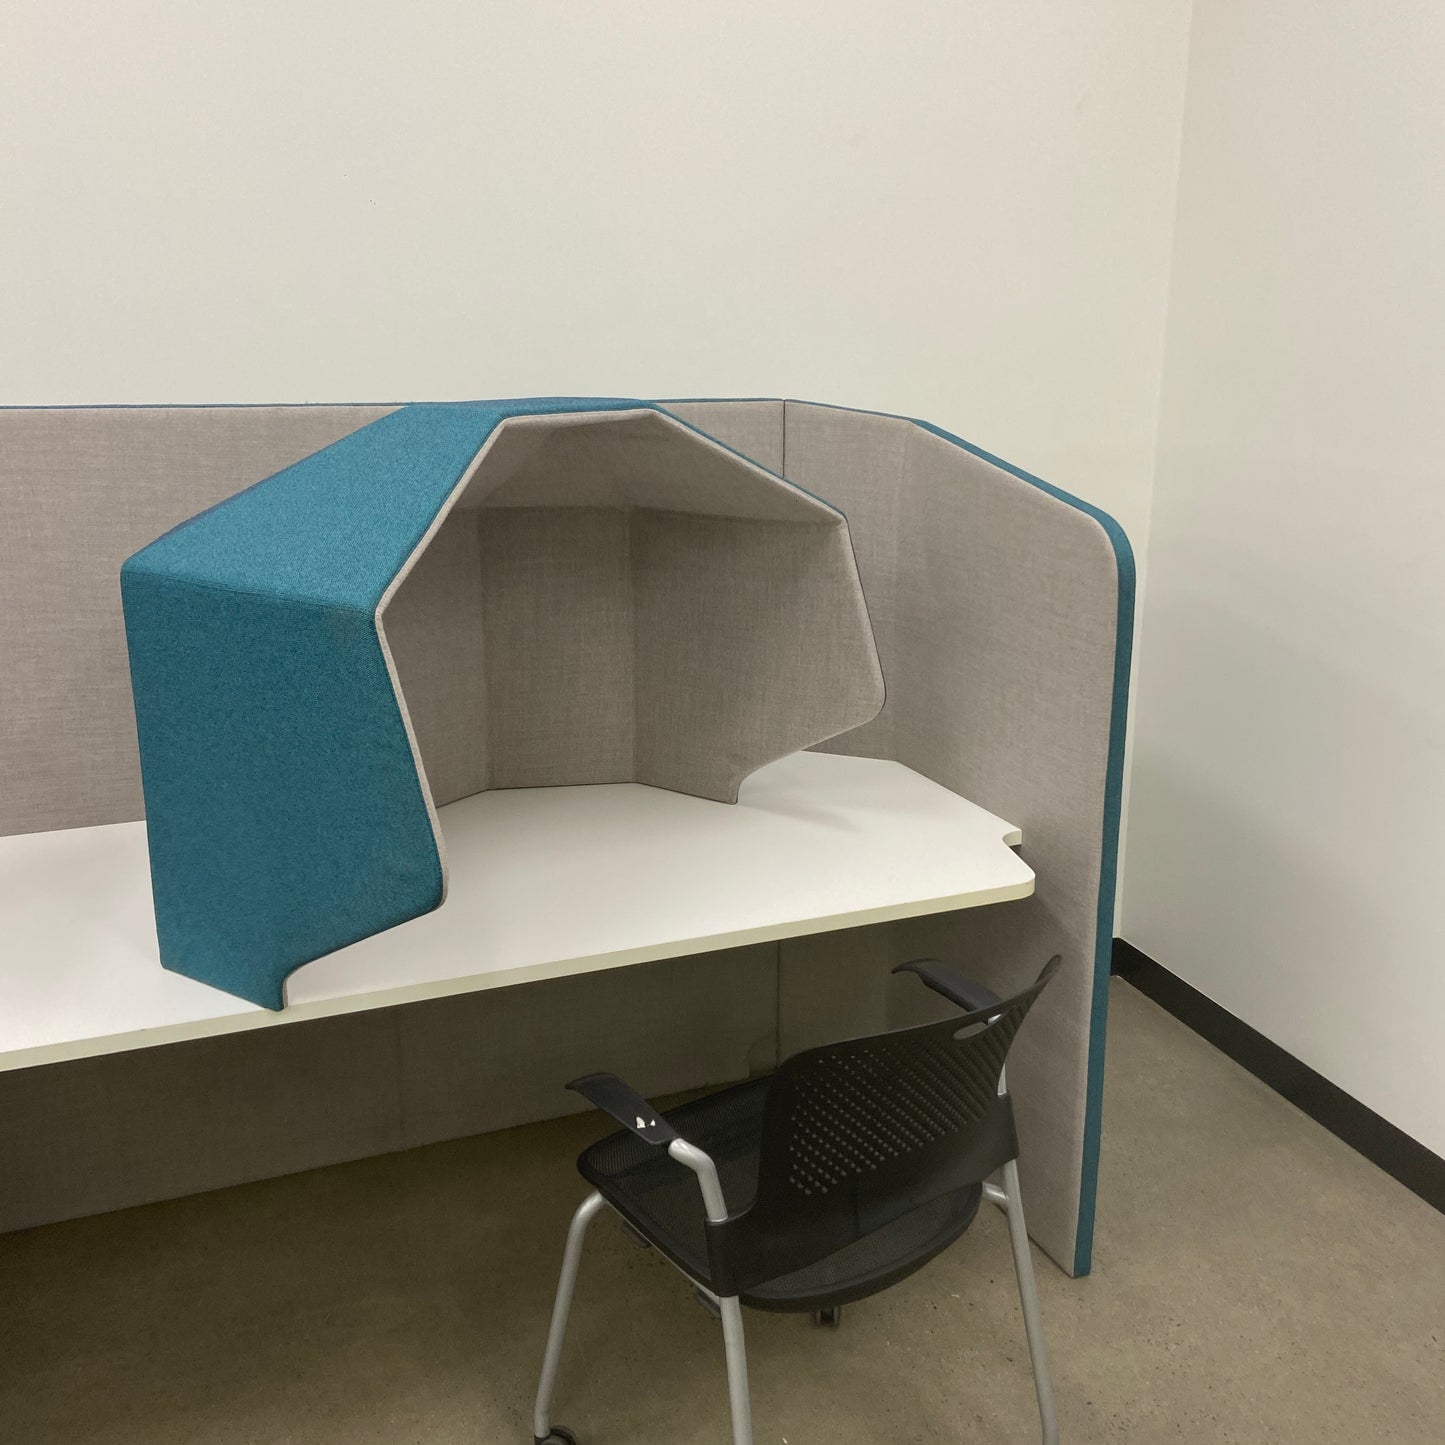 Privacy Pod Desk Accessory